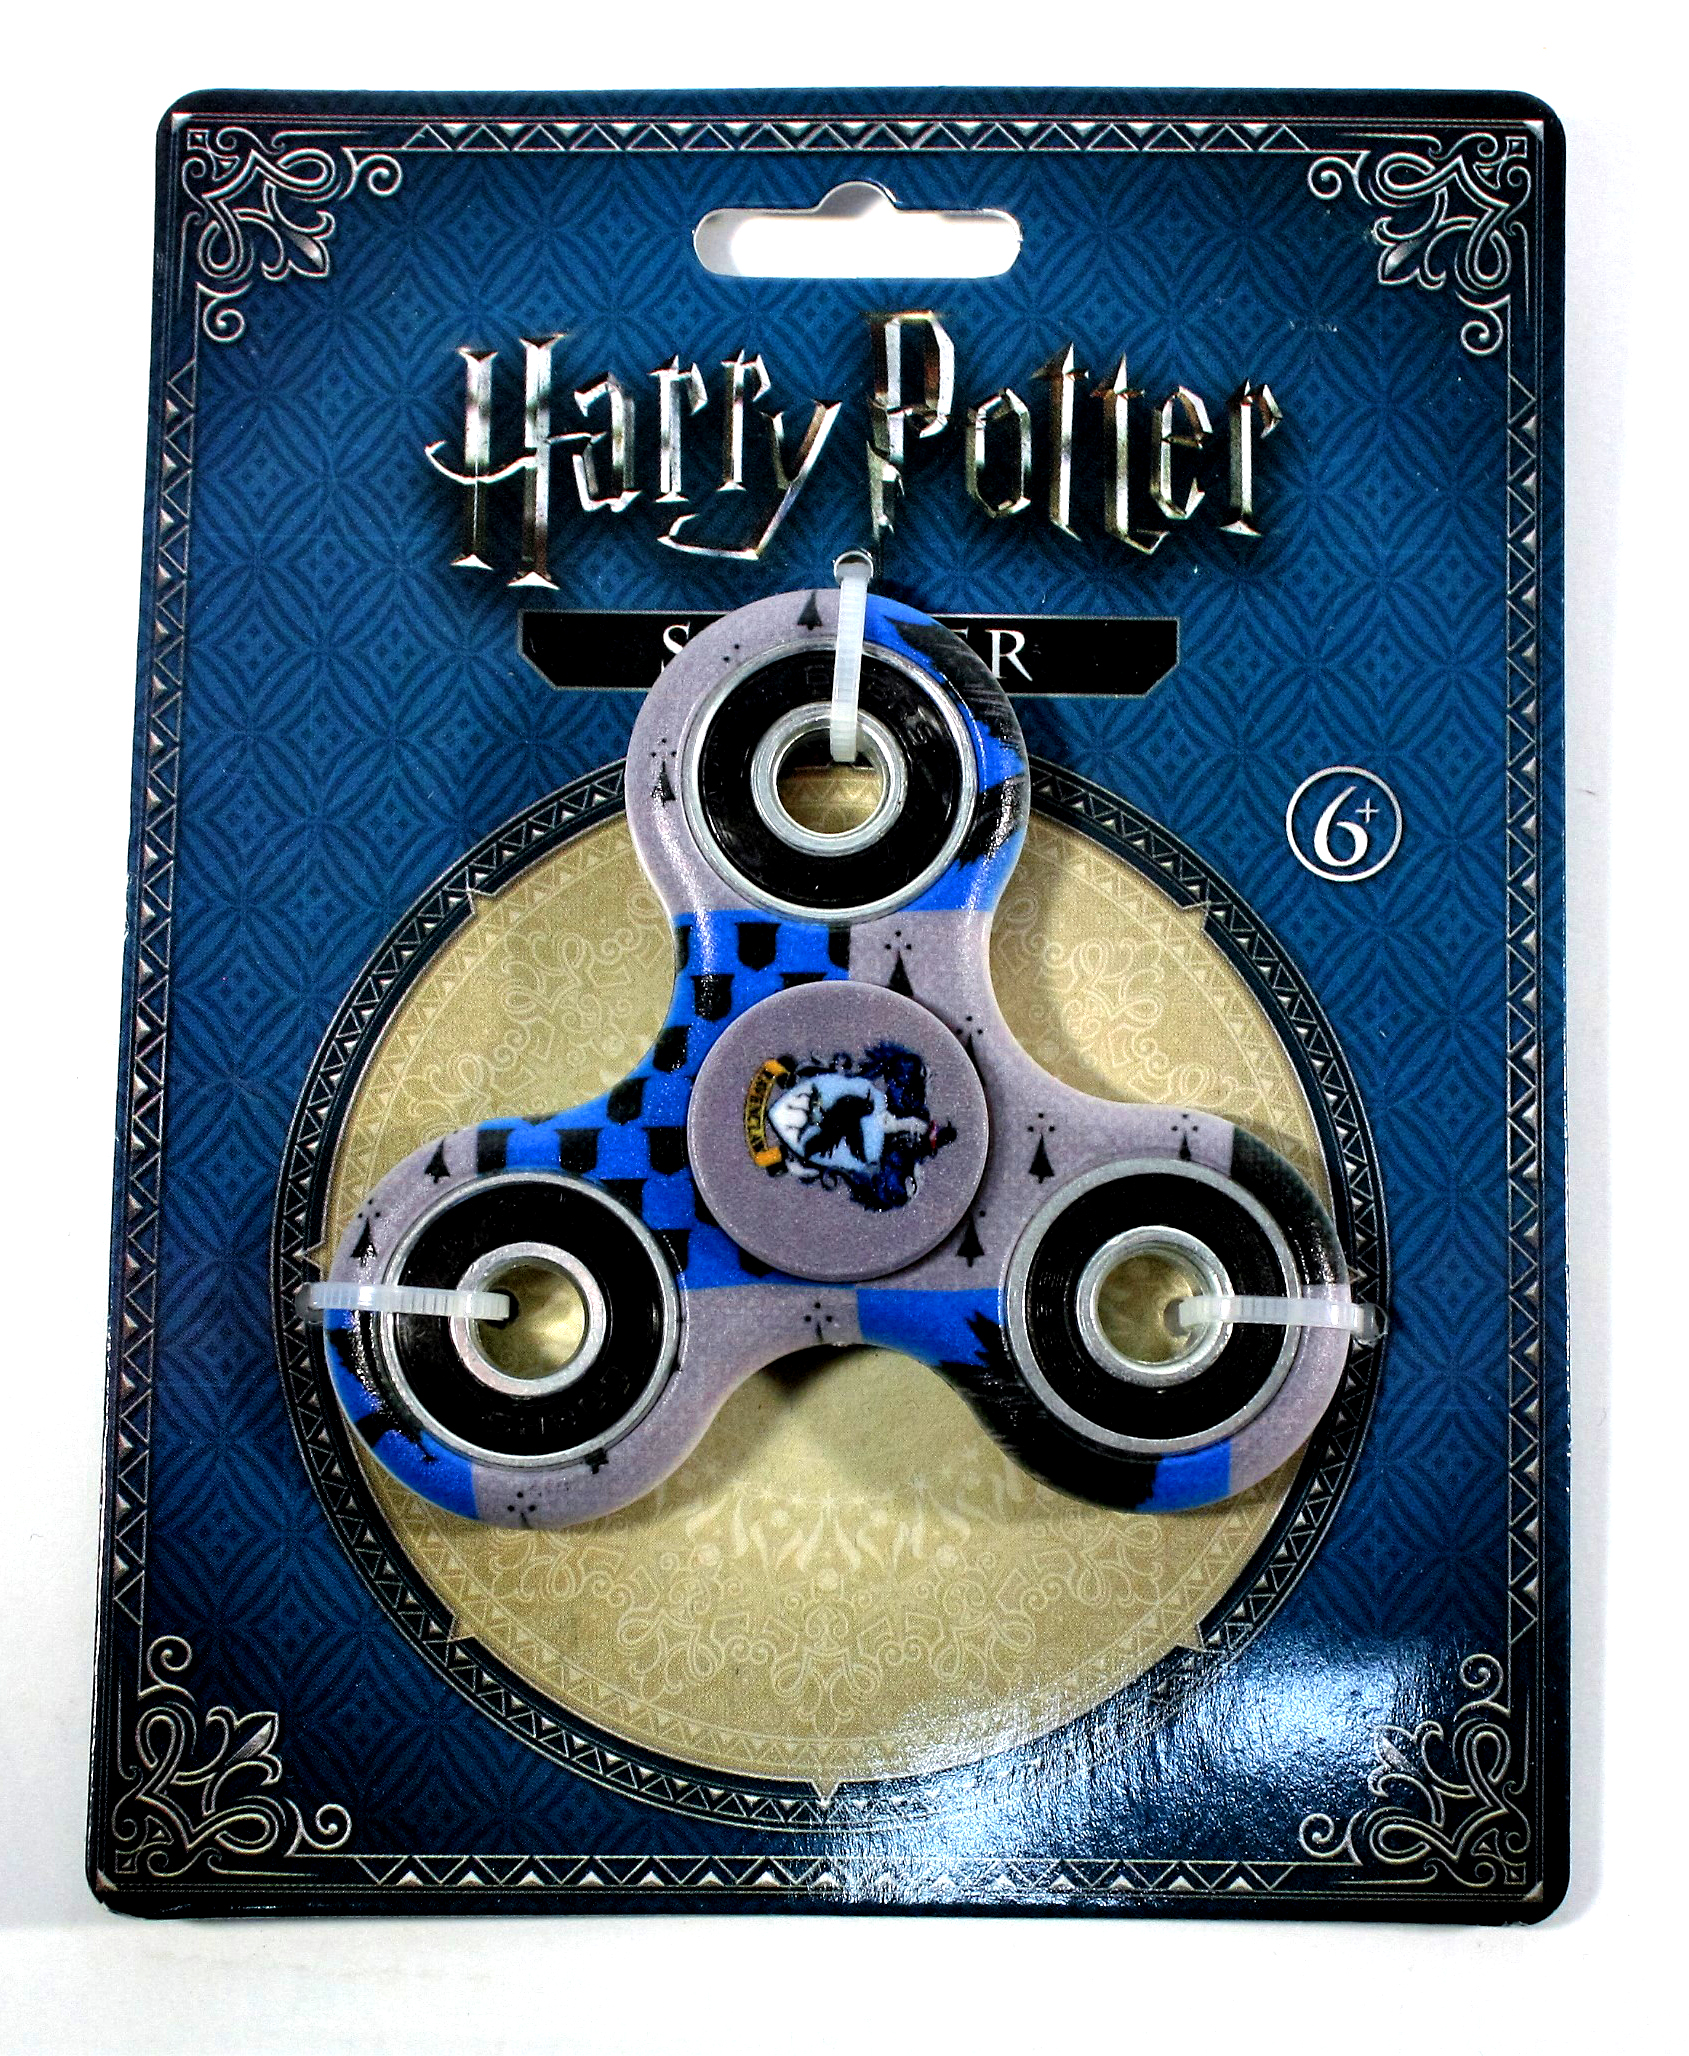 Harry potter fidget spinner